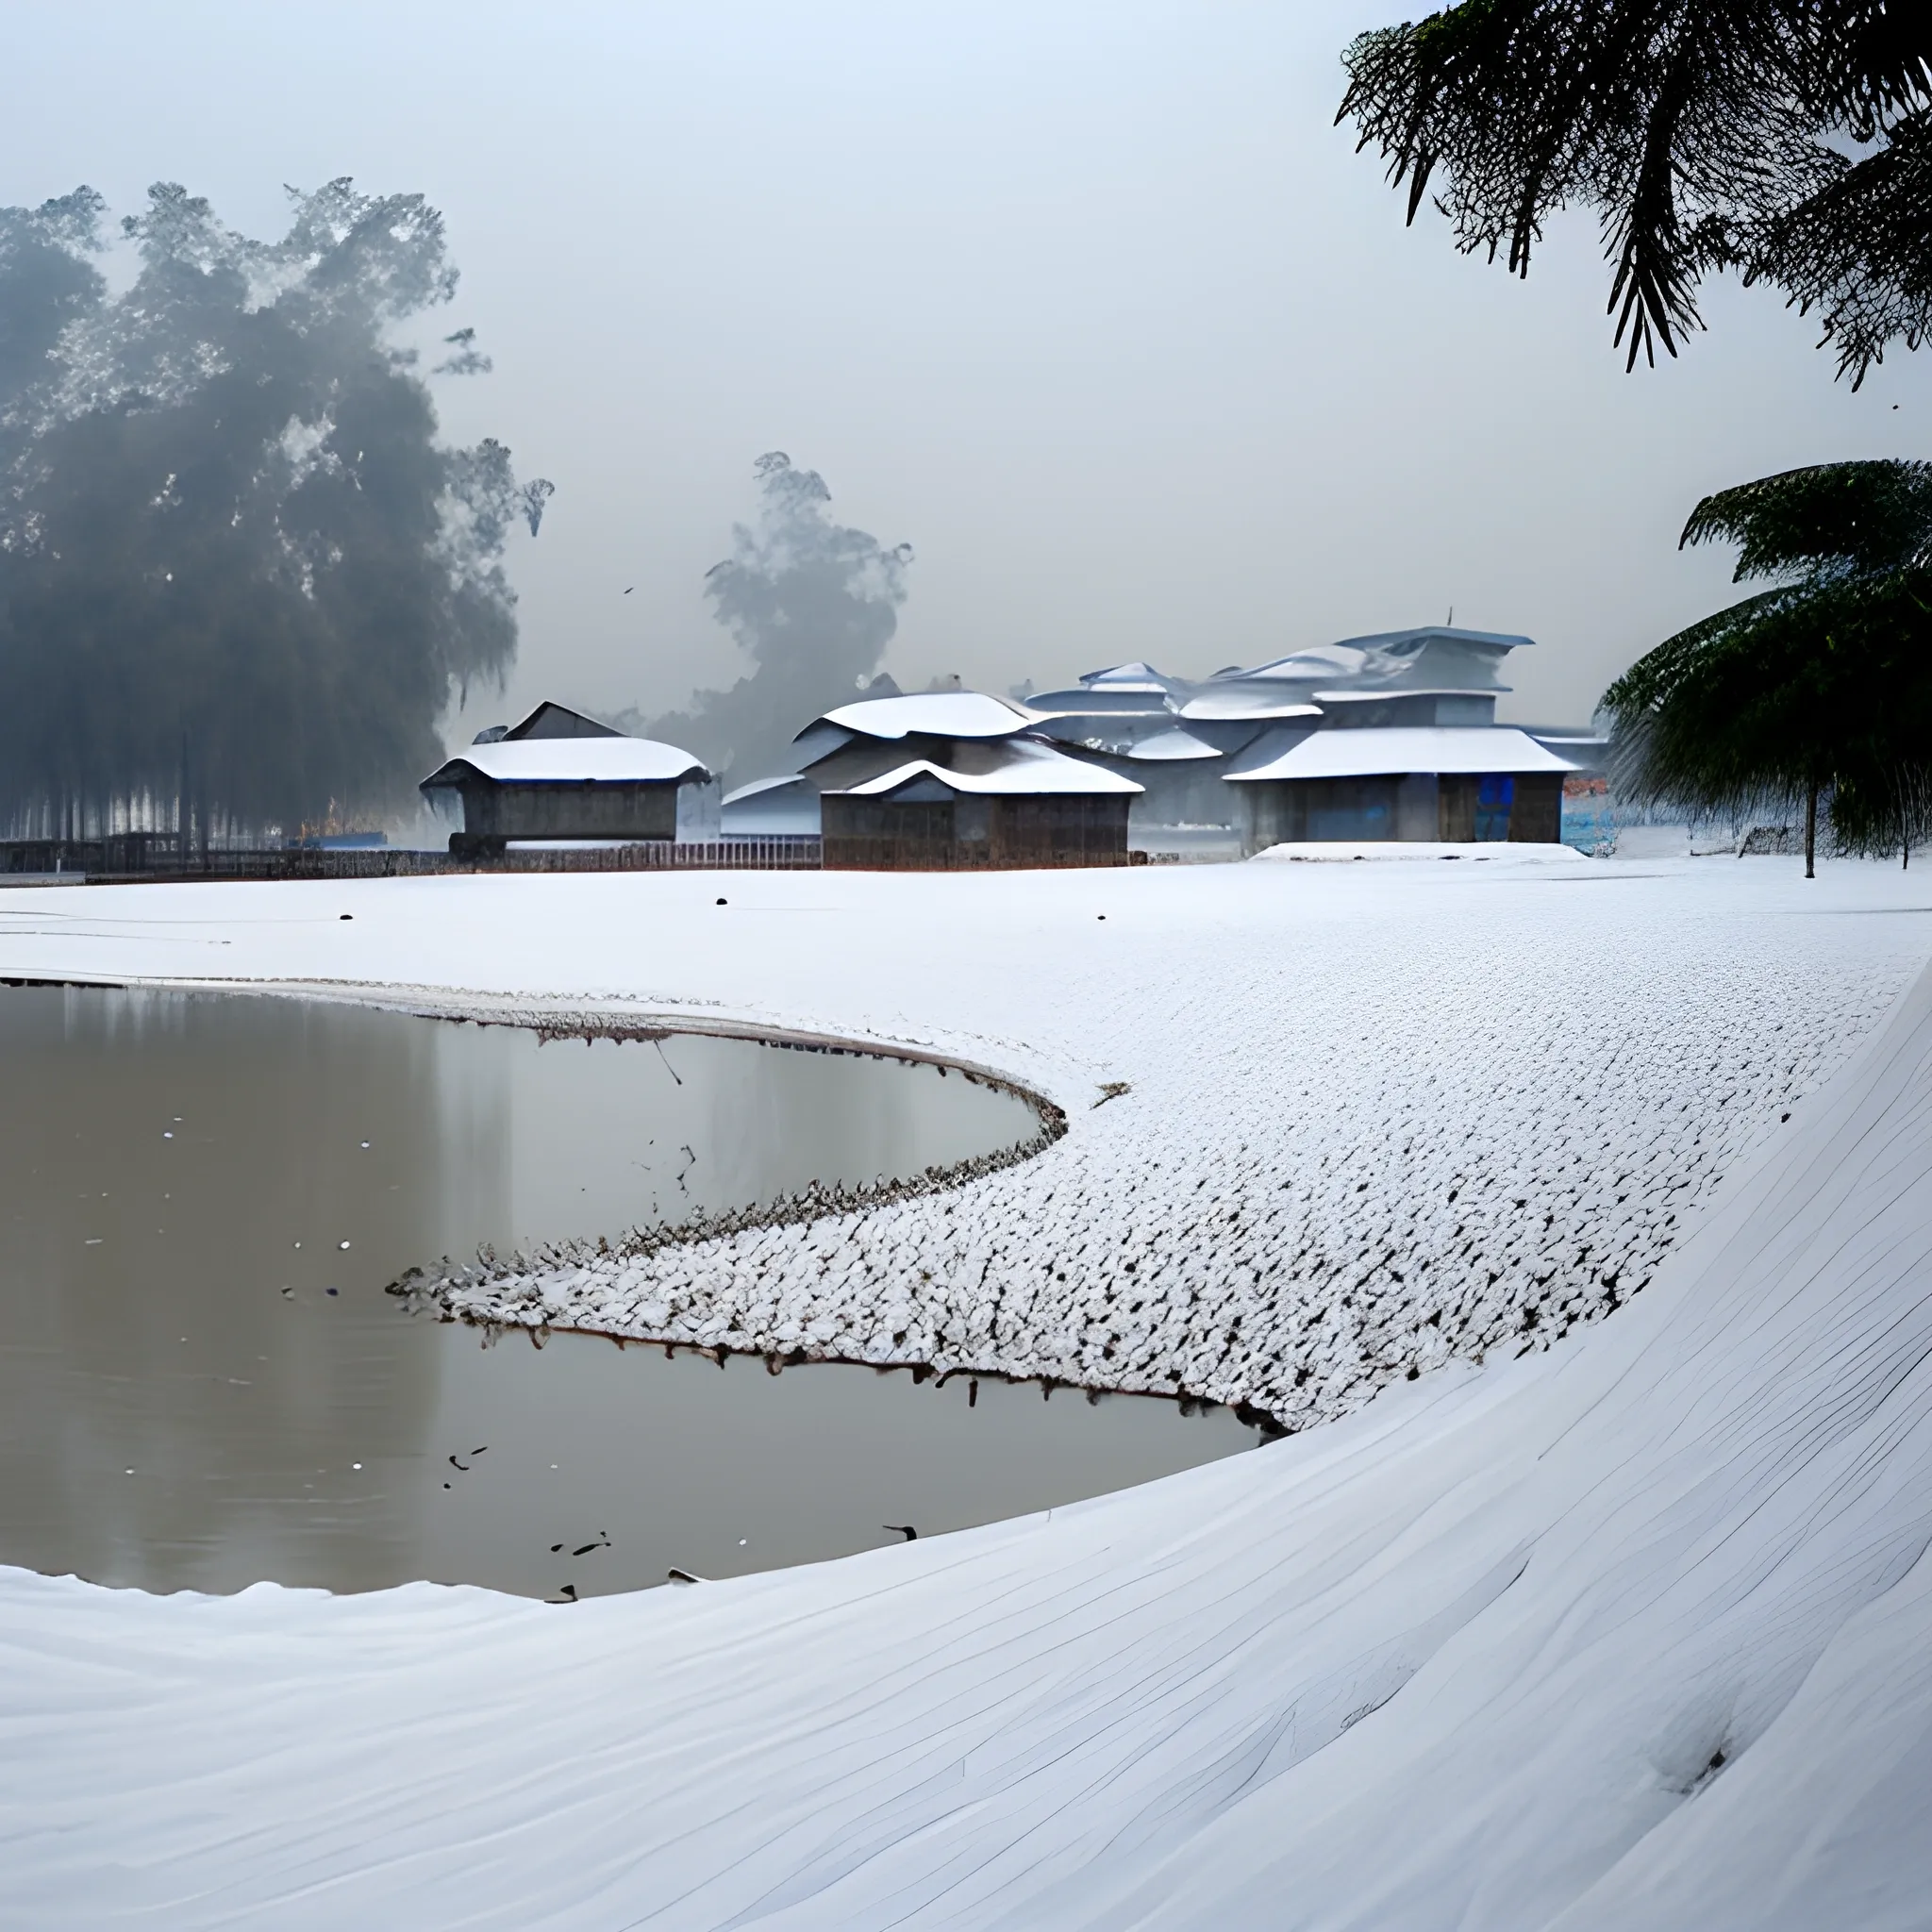 BANGLADESH SNOWFALLS 